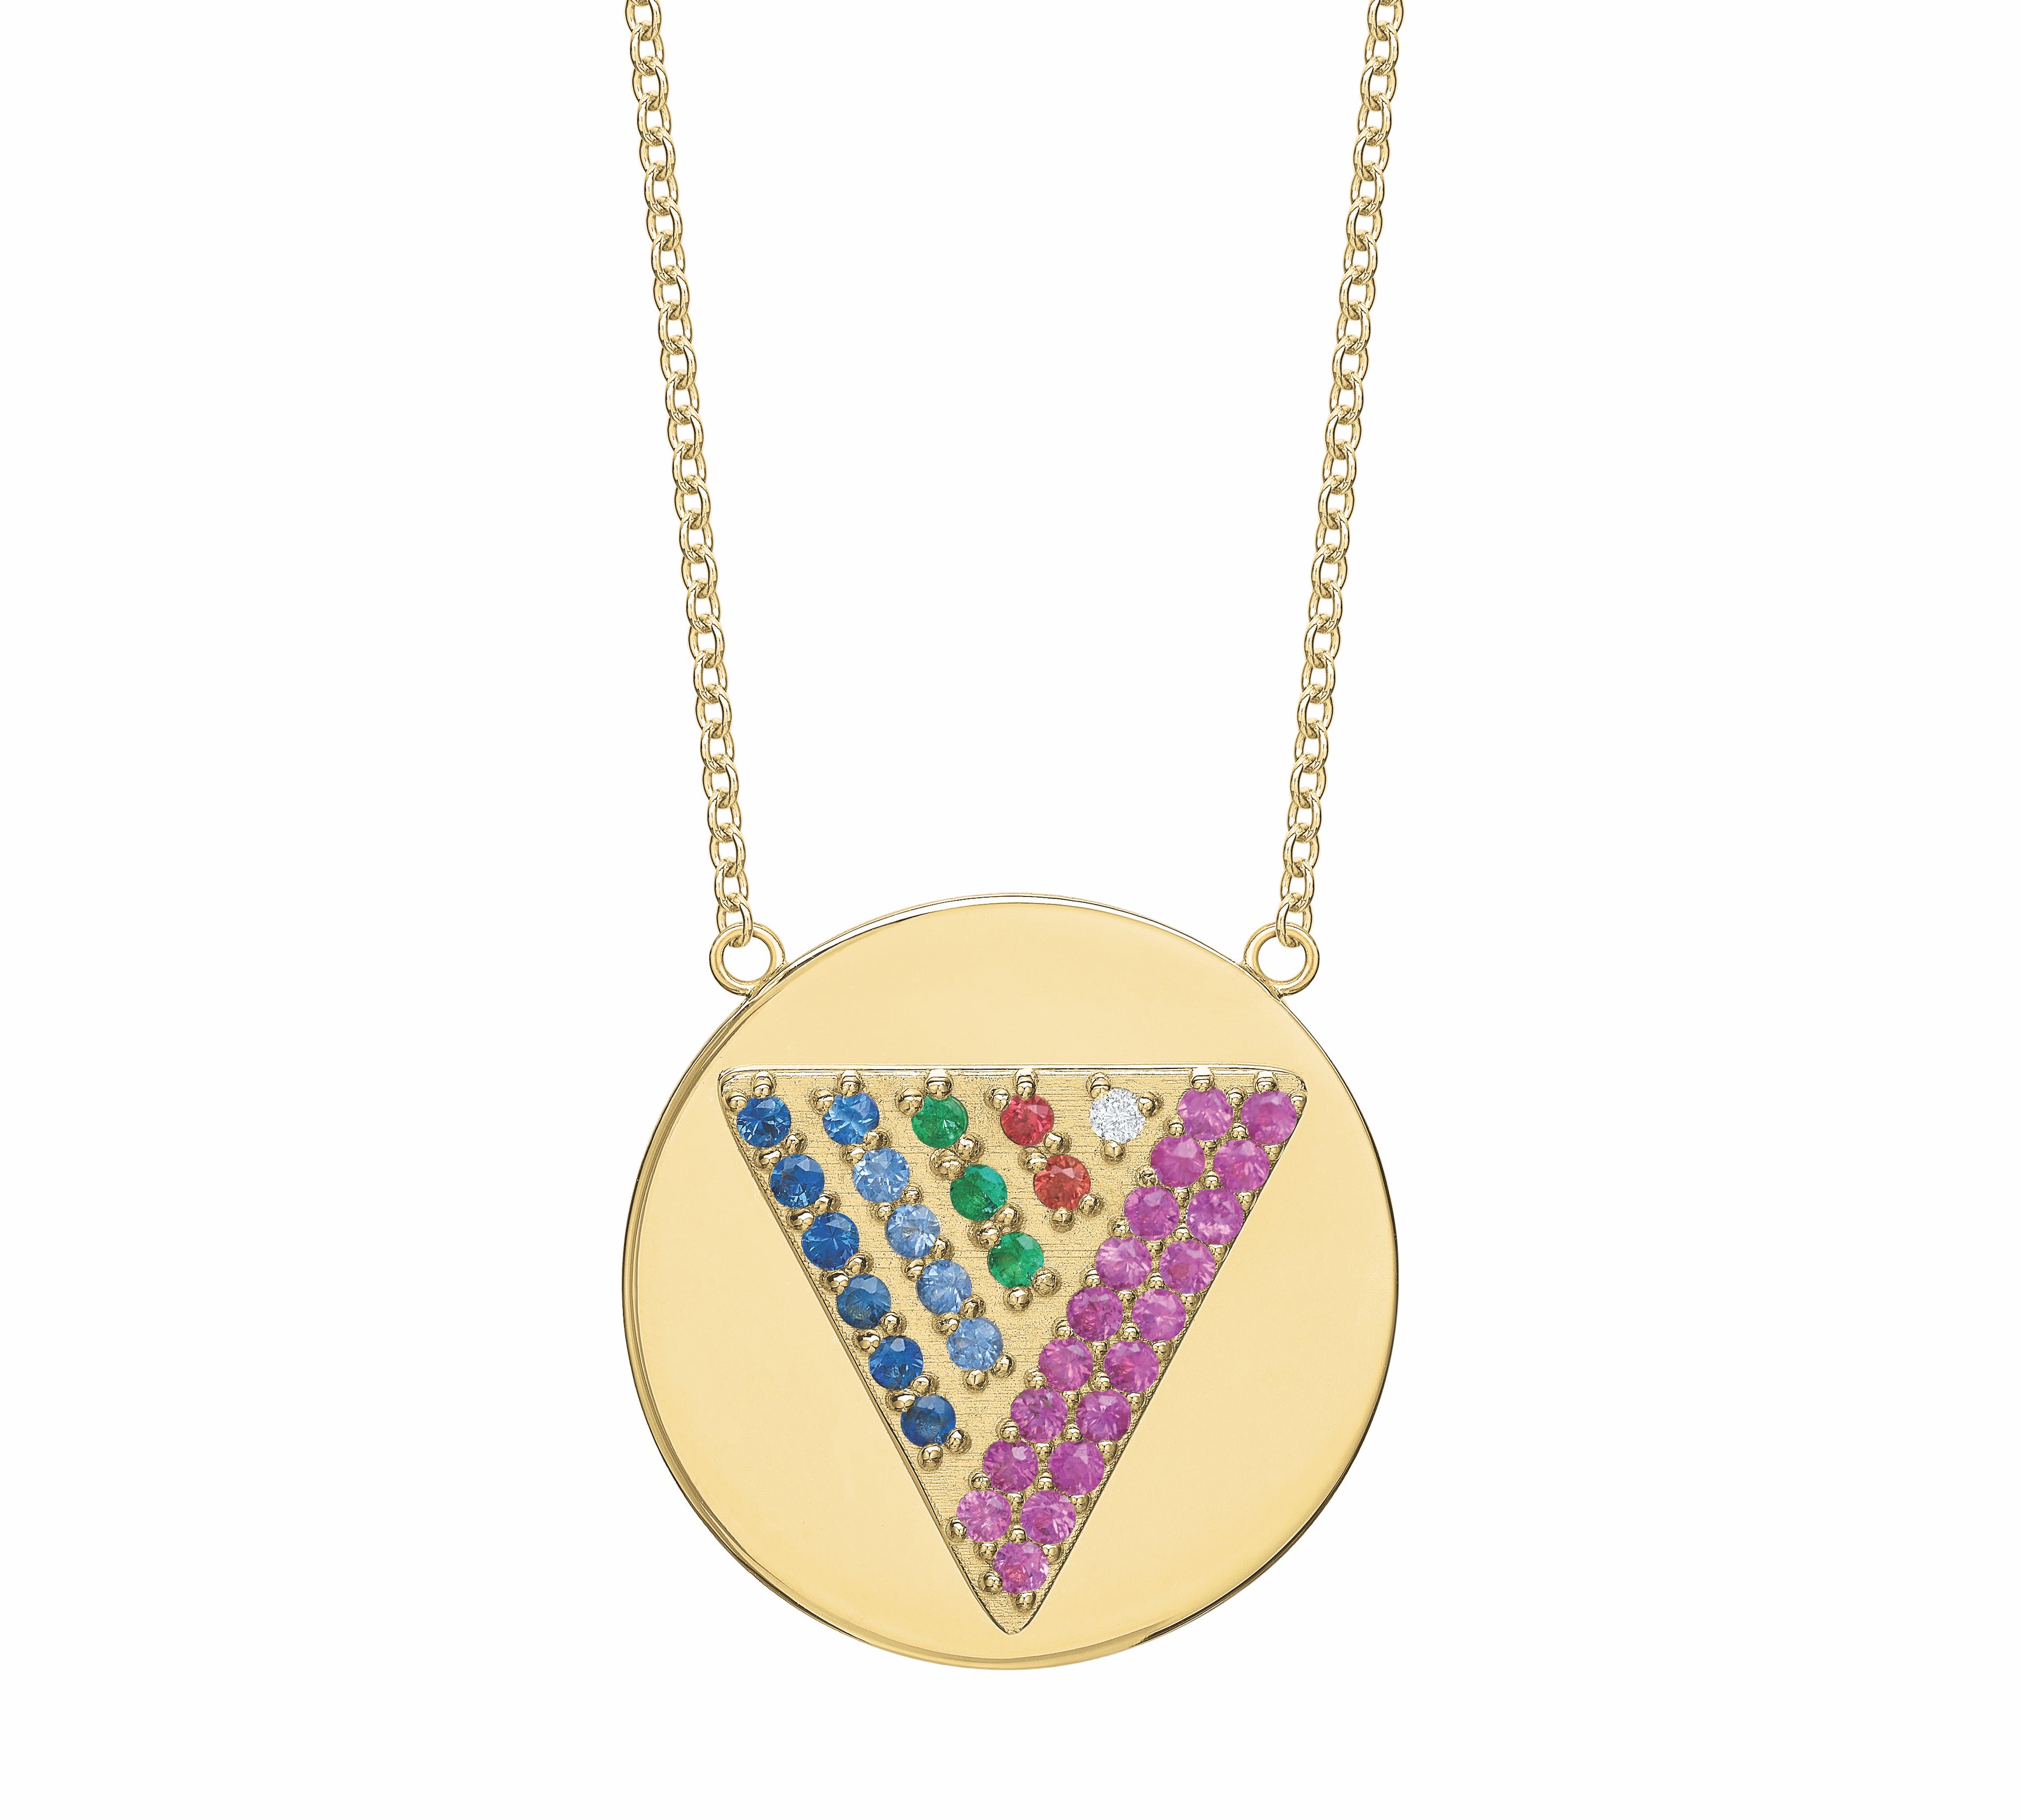 Love Triangle Token Necklace Pendant Tracee Nichols Multi-Stone  